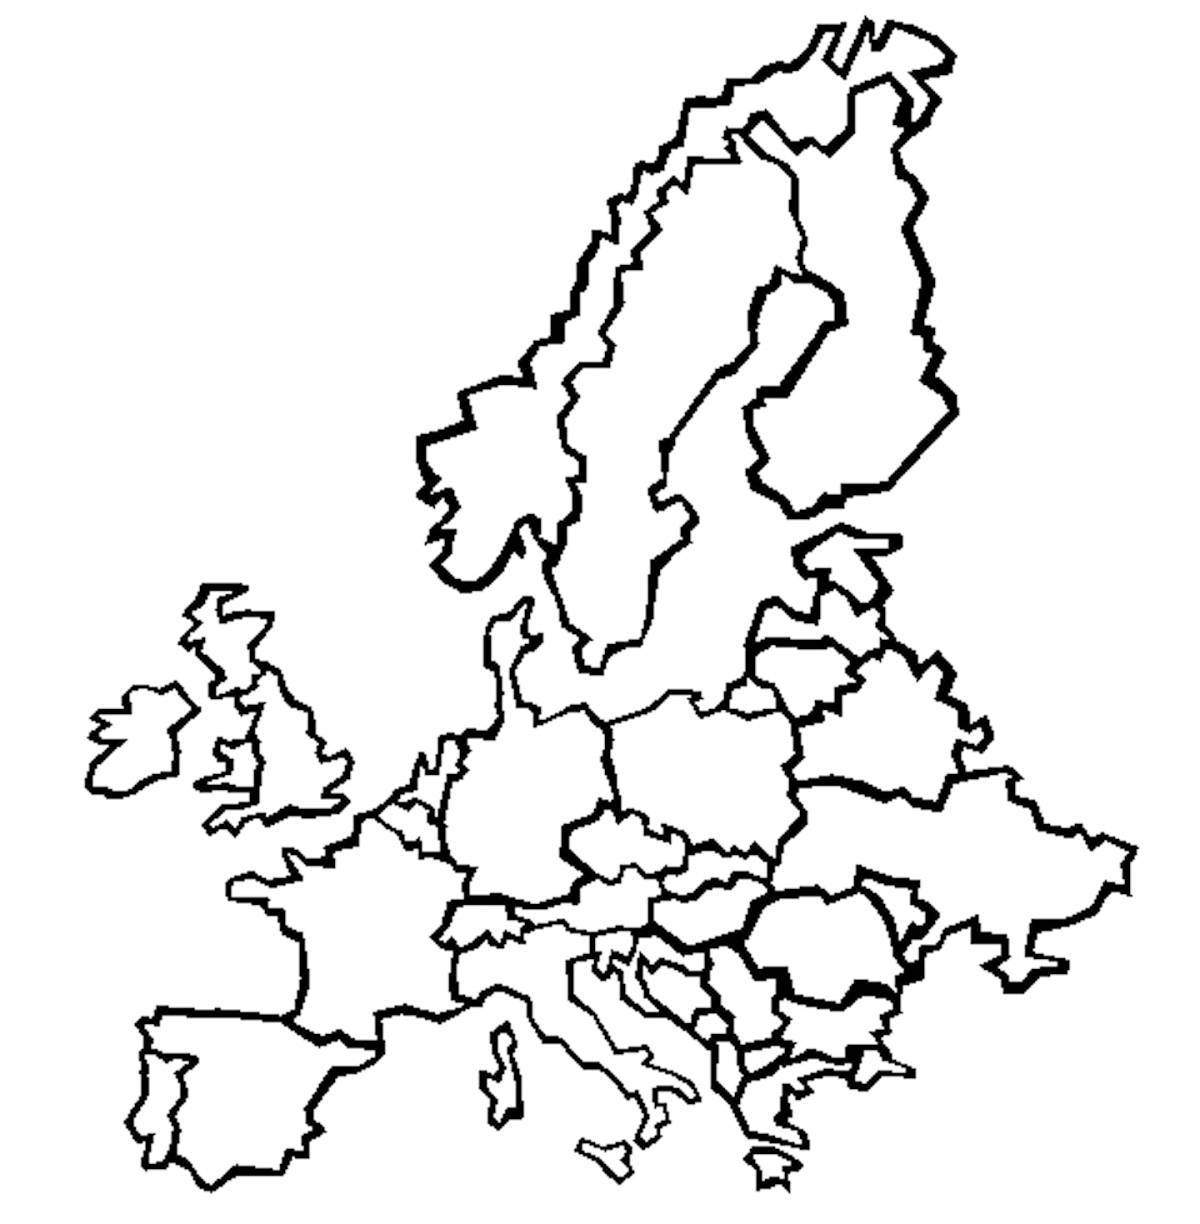 Замечательная карта европы